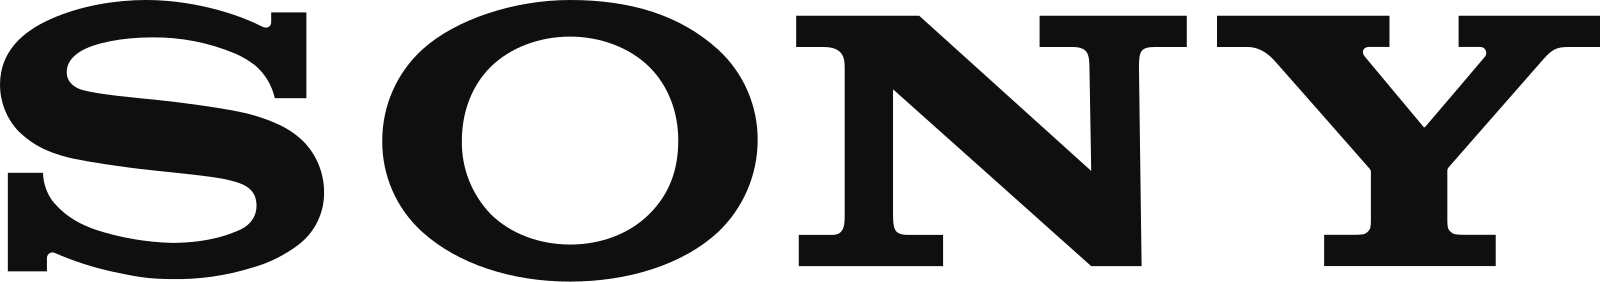 6 0 ми. Sony лого. Sony logo PNG. Sony надпись. Sony товарный знак.